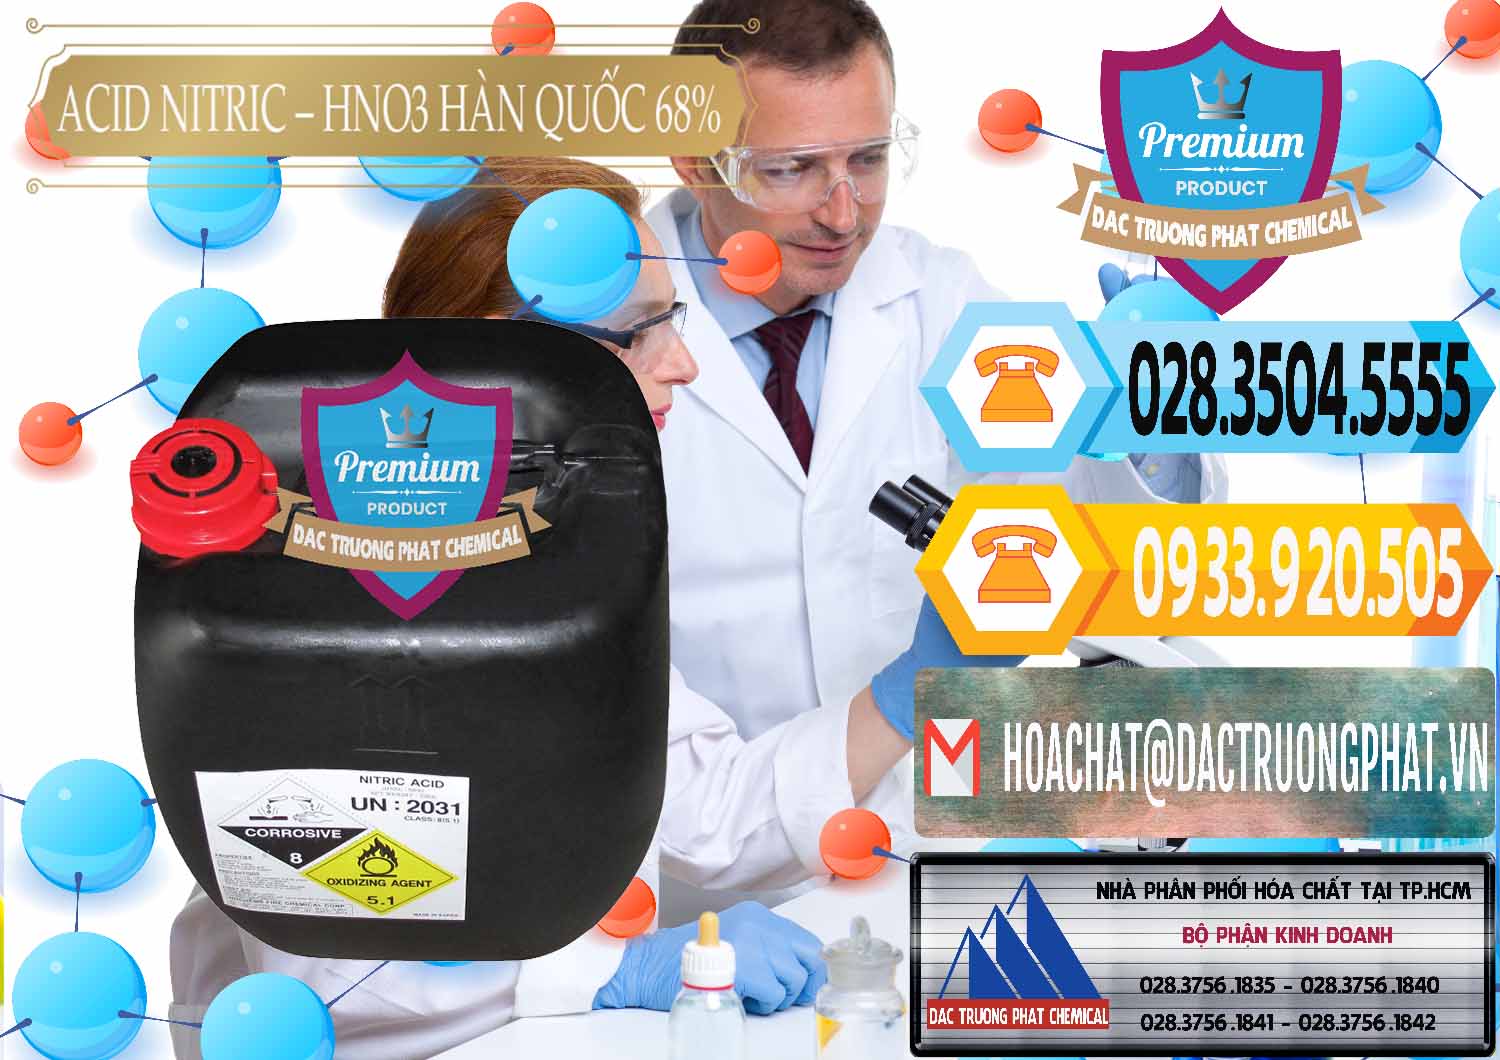 Đơn vị chuyên kinh doanh ( bán ) Acid Nitric – Axit Nitric HNO3 68% Huchem Hàn Quốc Korea - 0030 - Cty chuyên cung cấp _ kinh doanh hóa chất tại TP.HCM - hoachattayrua.net